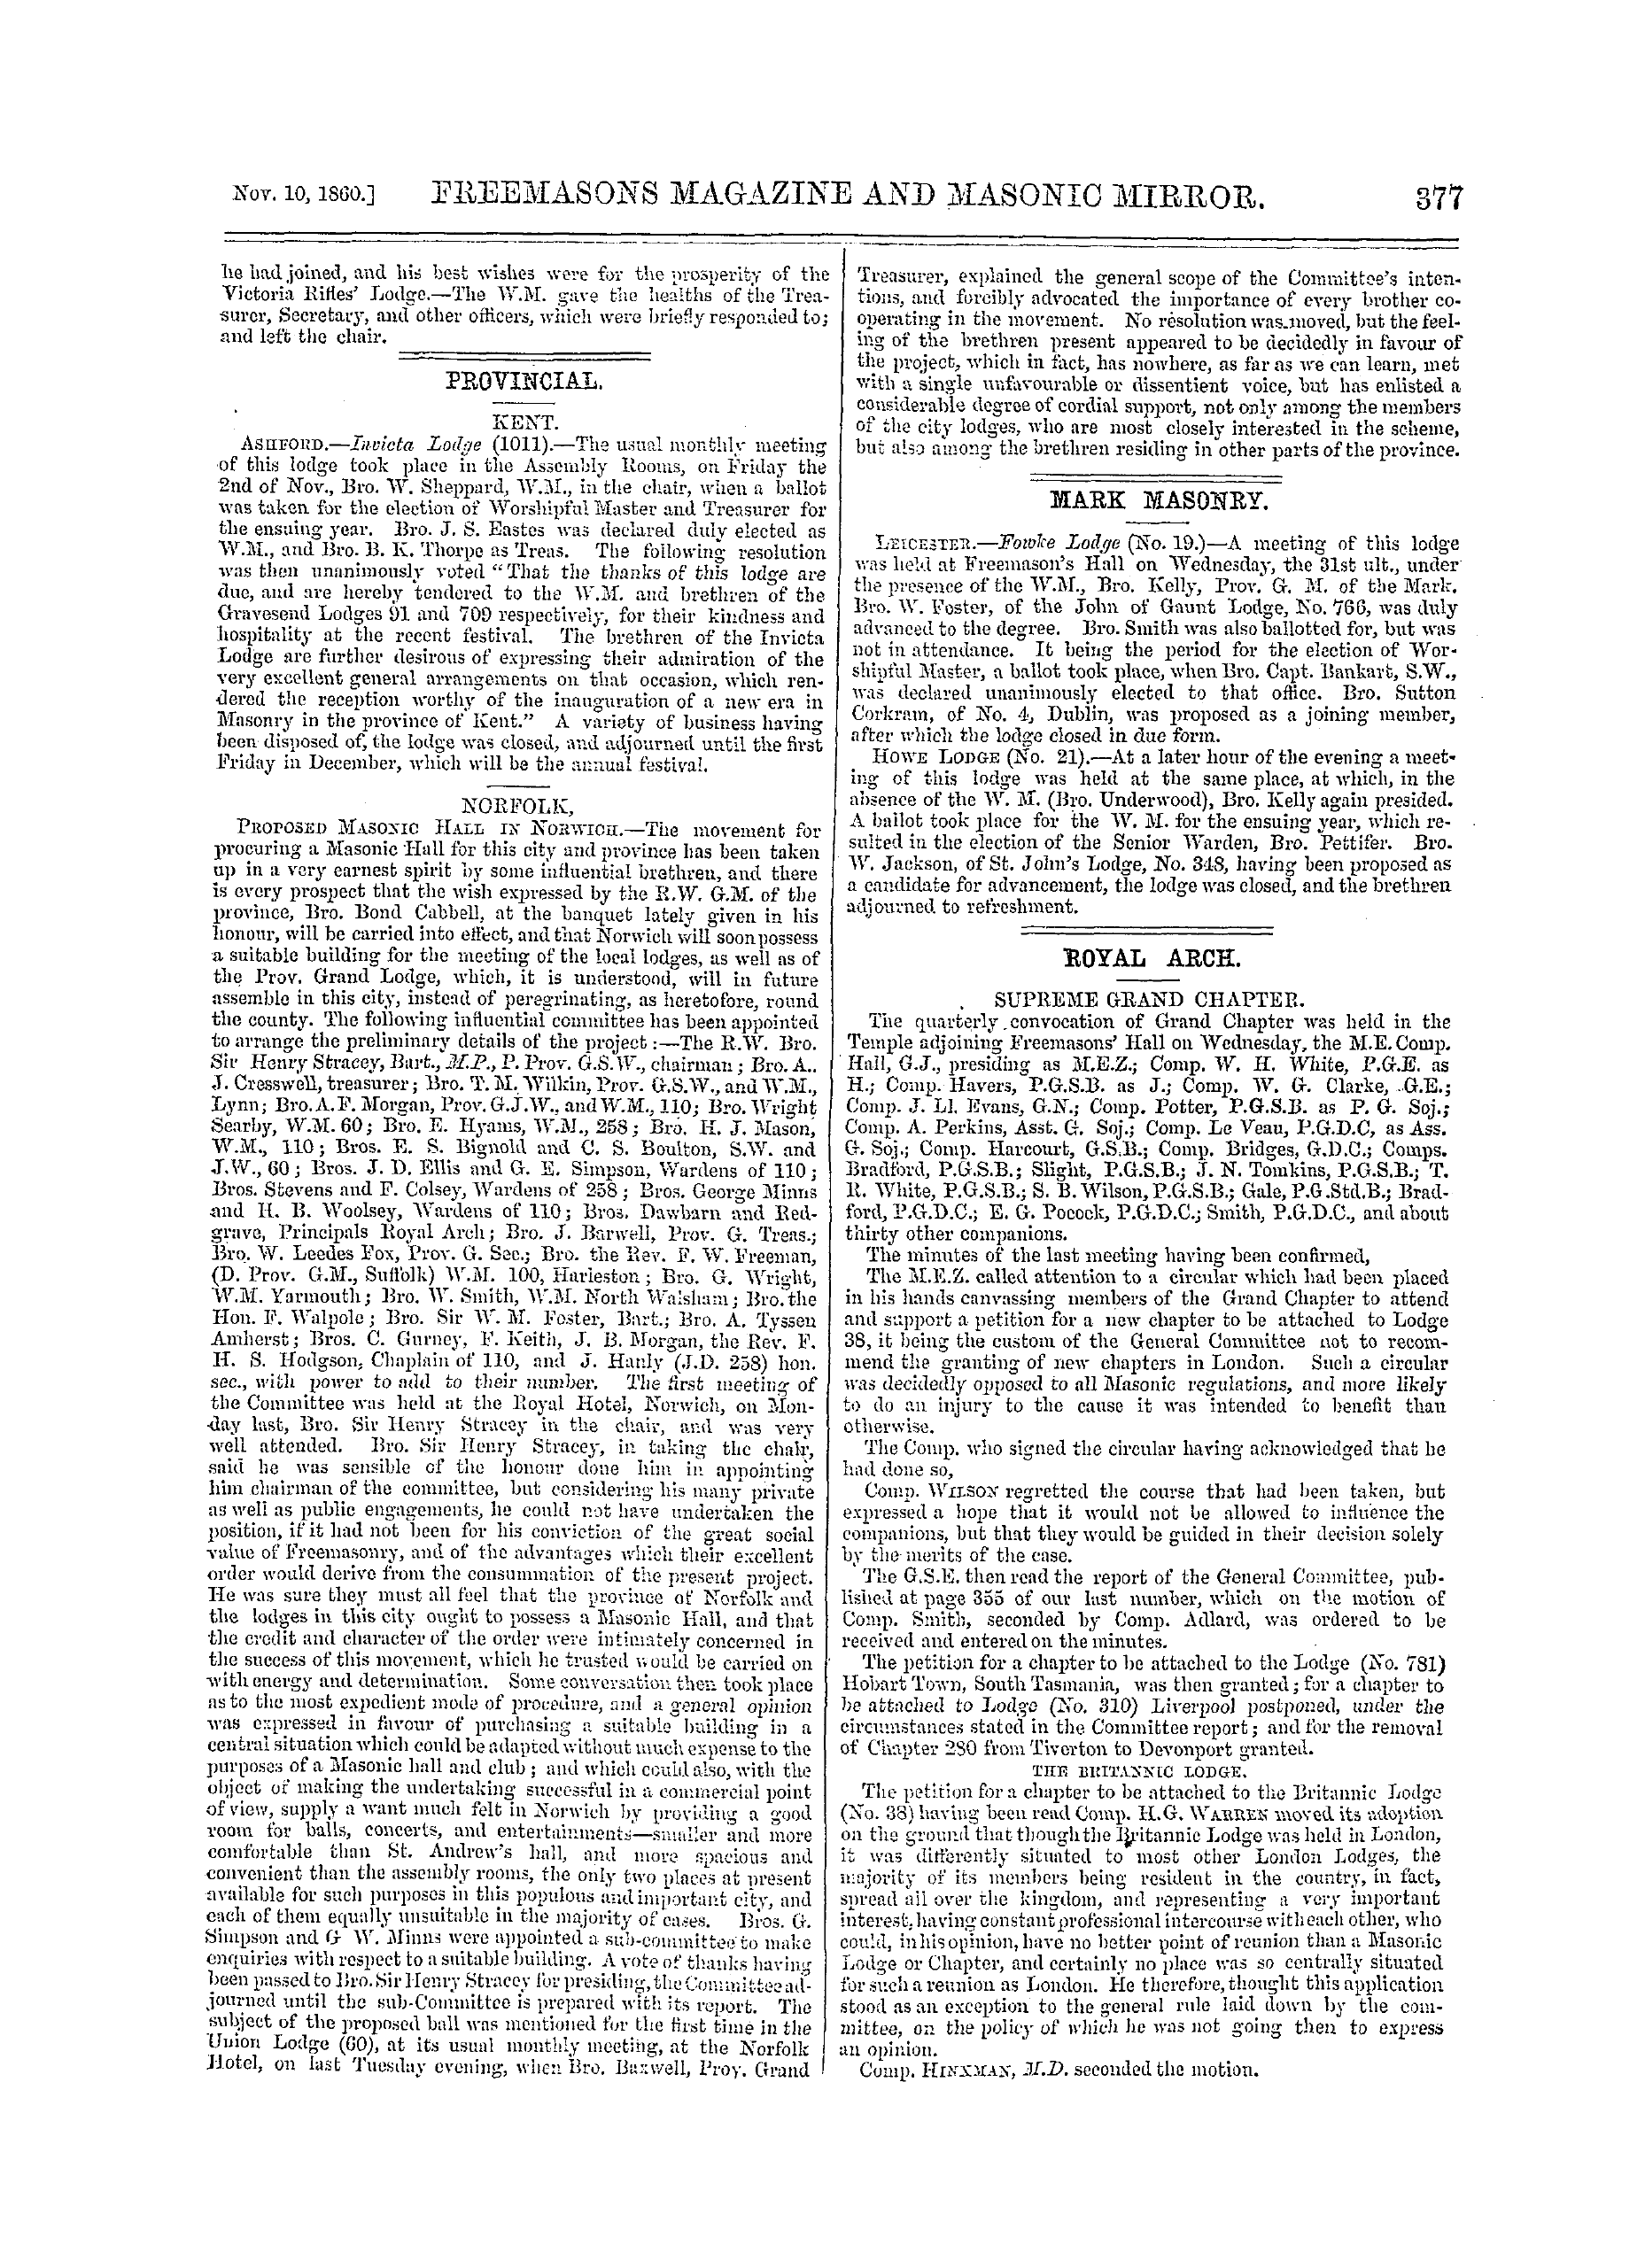 The Freemasons' Monthly Magazine: 1860-11-10 - Mark Masonry.